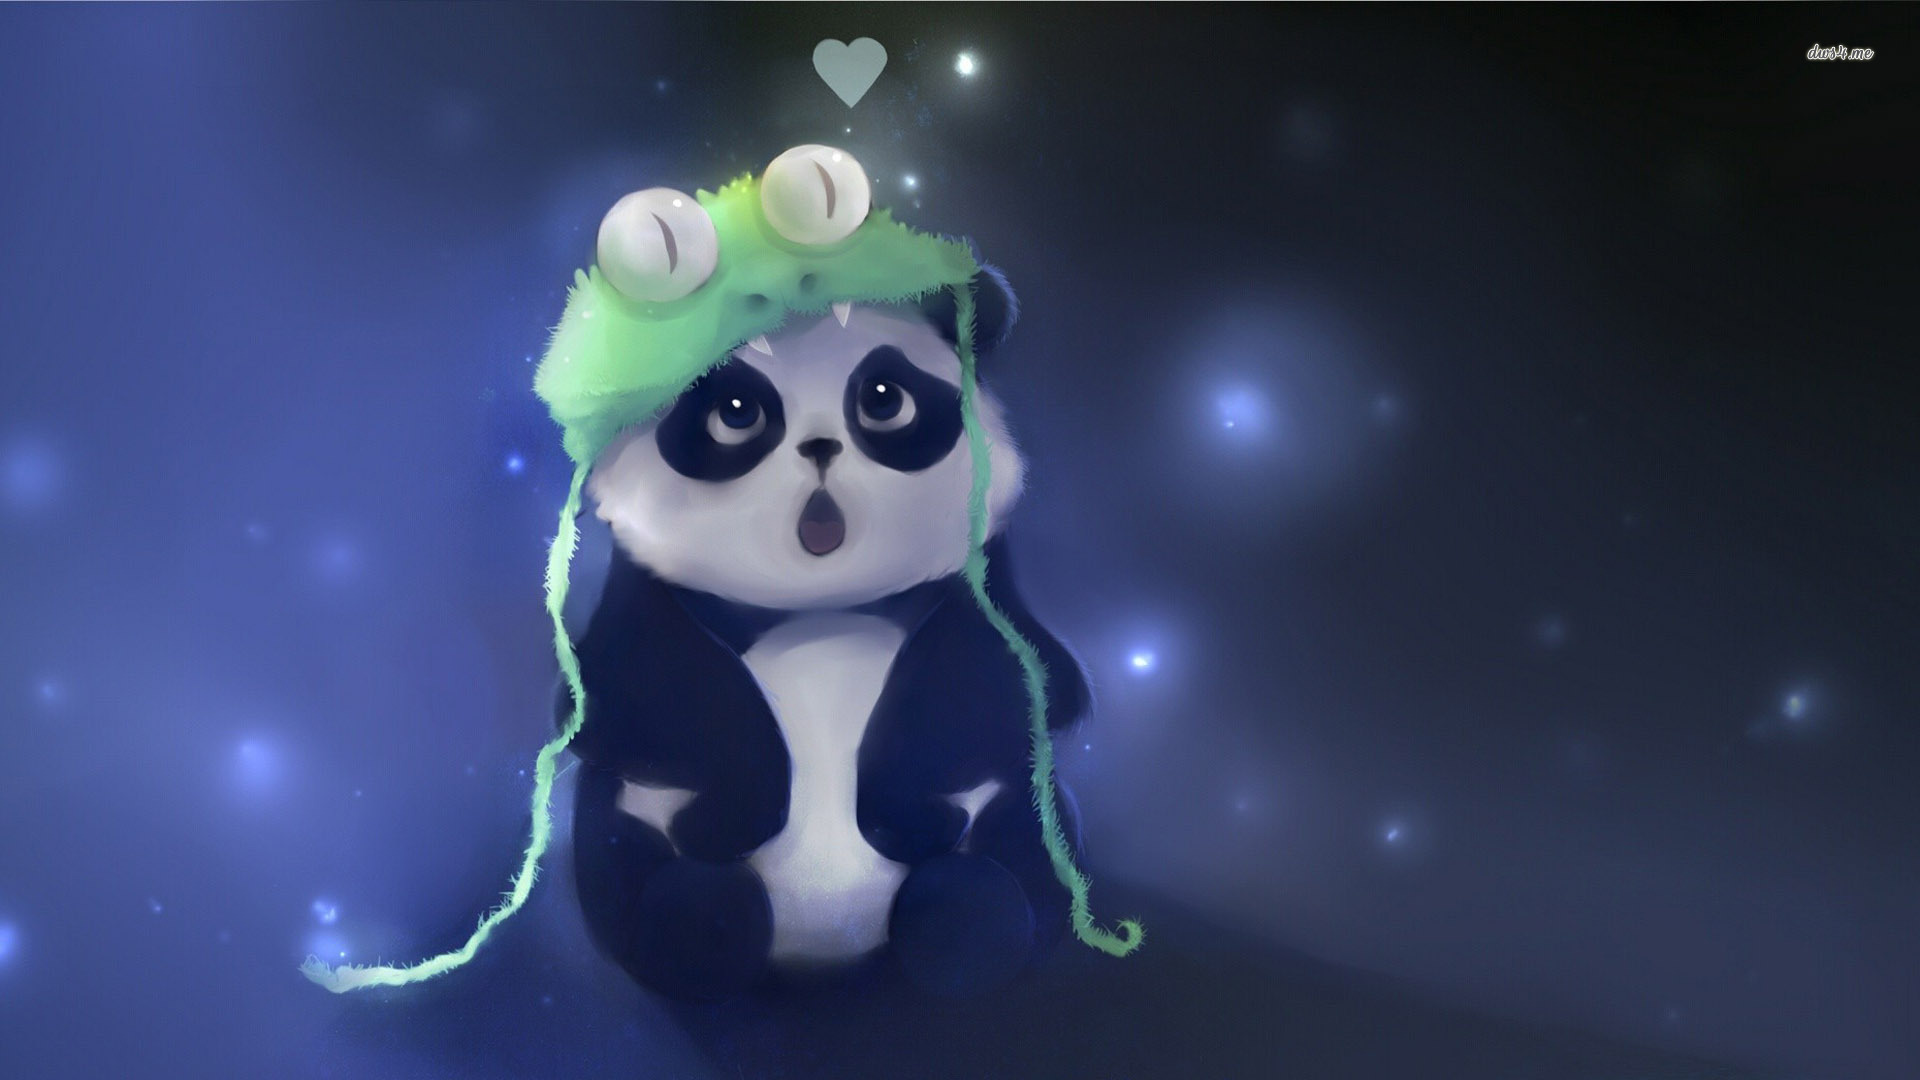 Source Desktopwallpaper4 Me Artistic Cute Panda